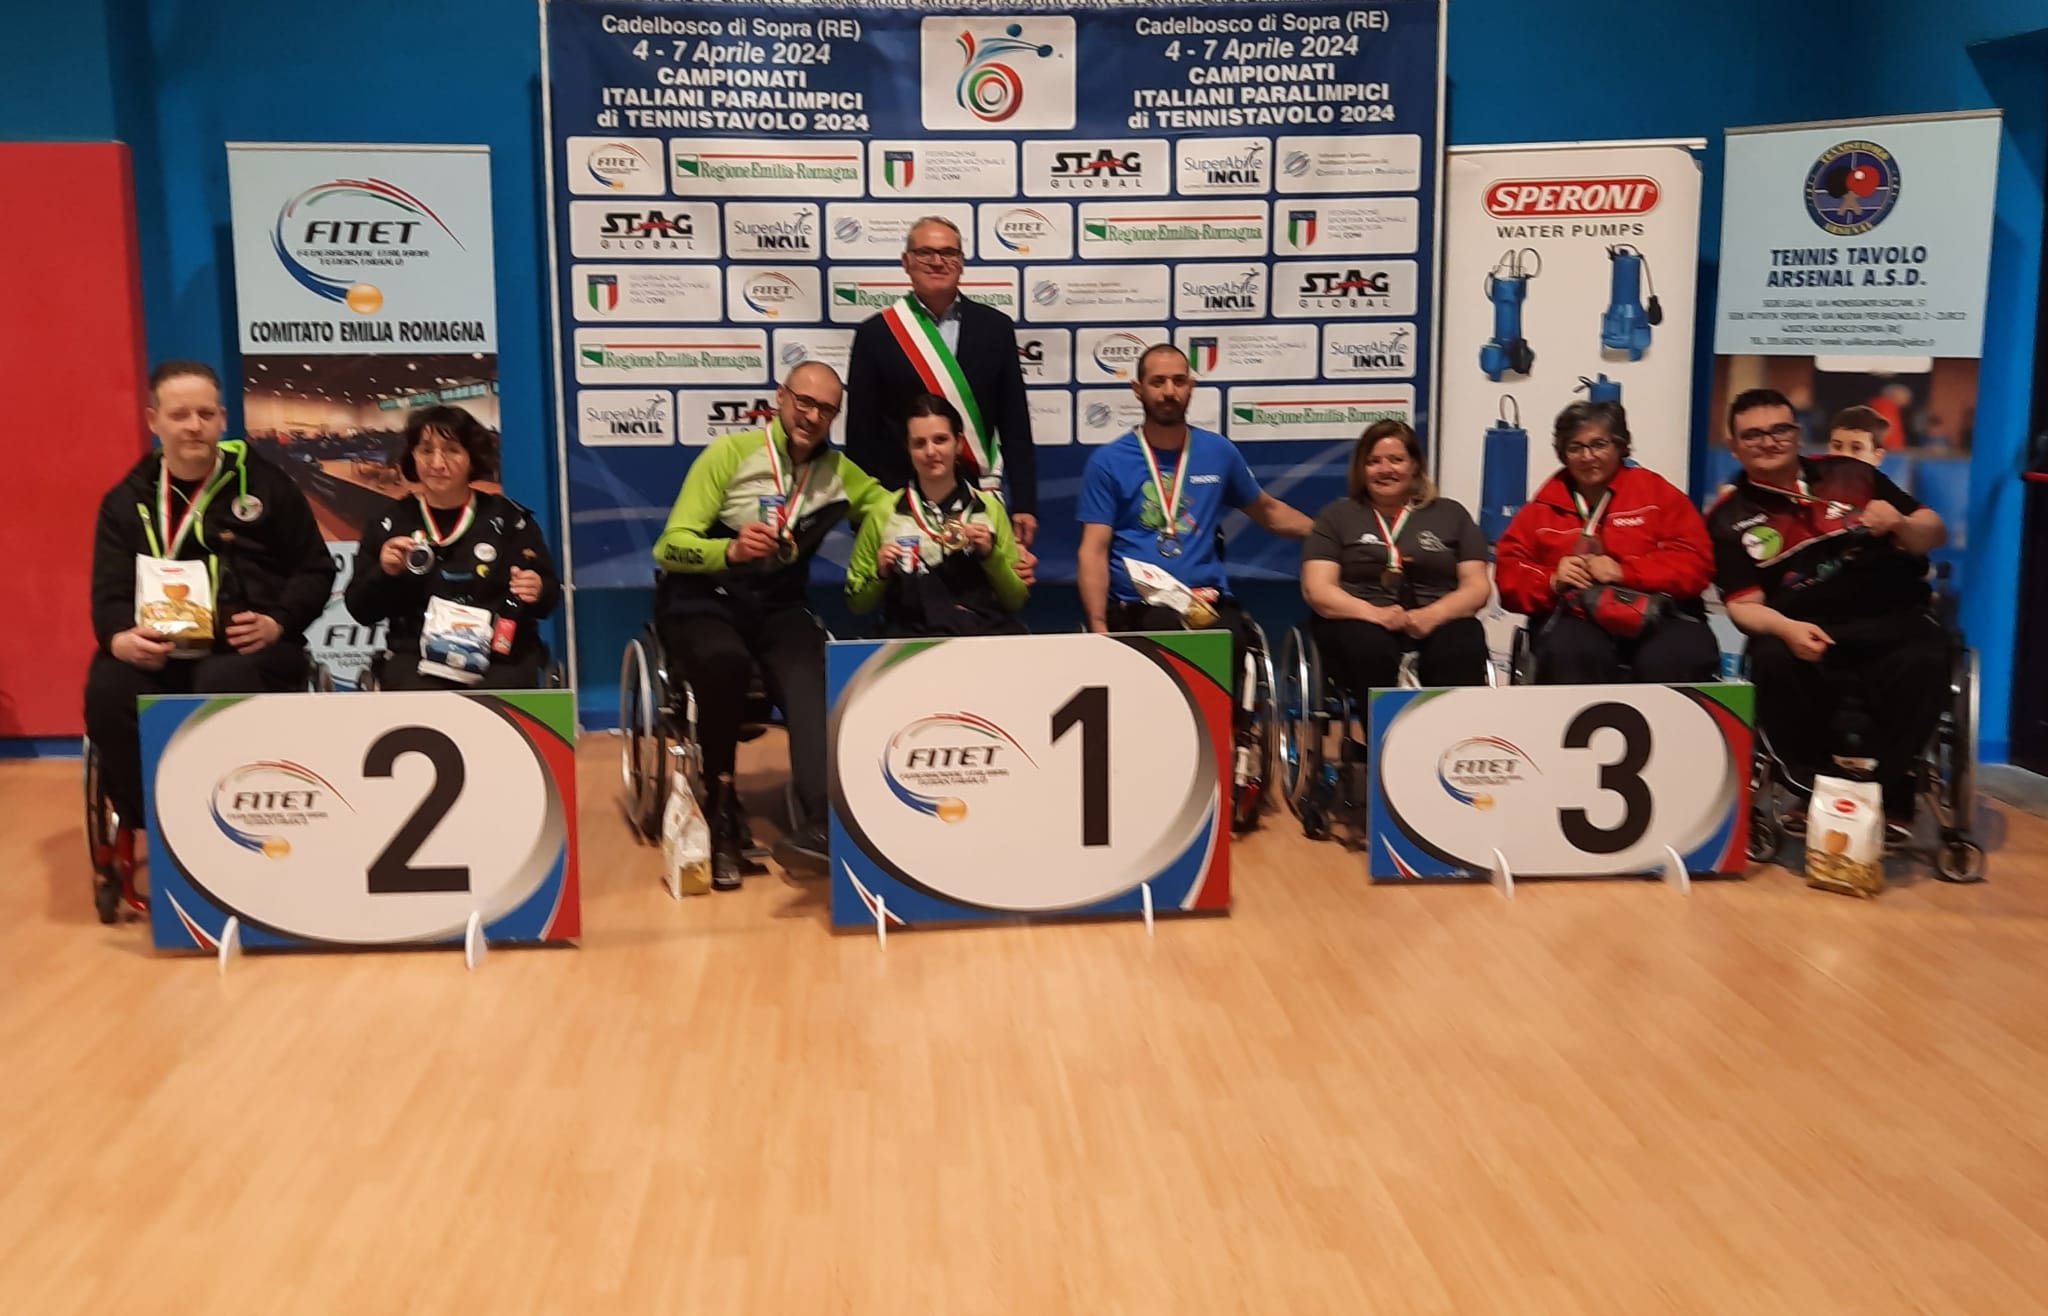 Campionati Italiani Paralimpici di Cadelbosco 2024 podio del doppio misto di classe 1 5